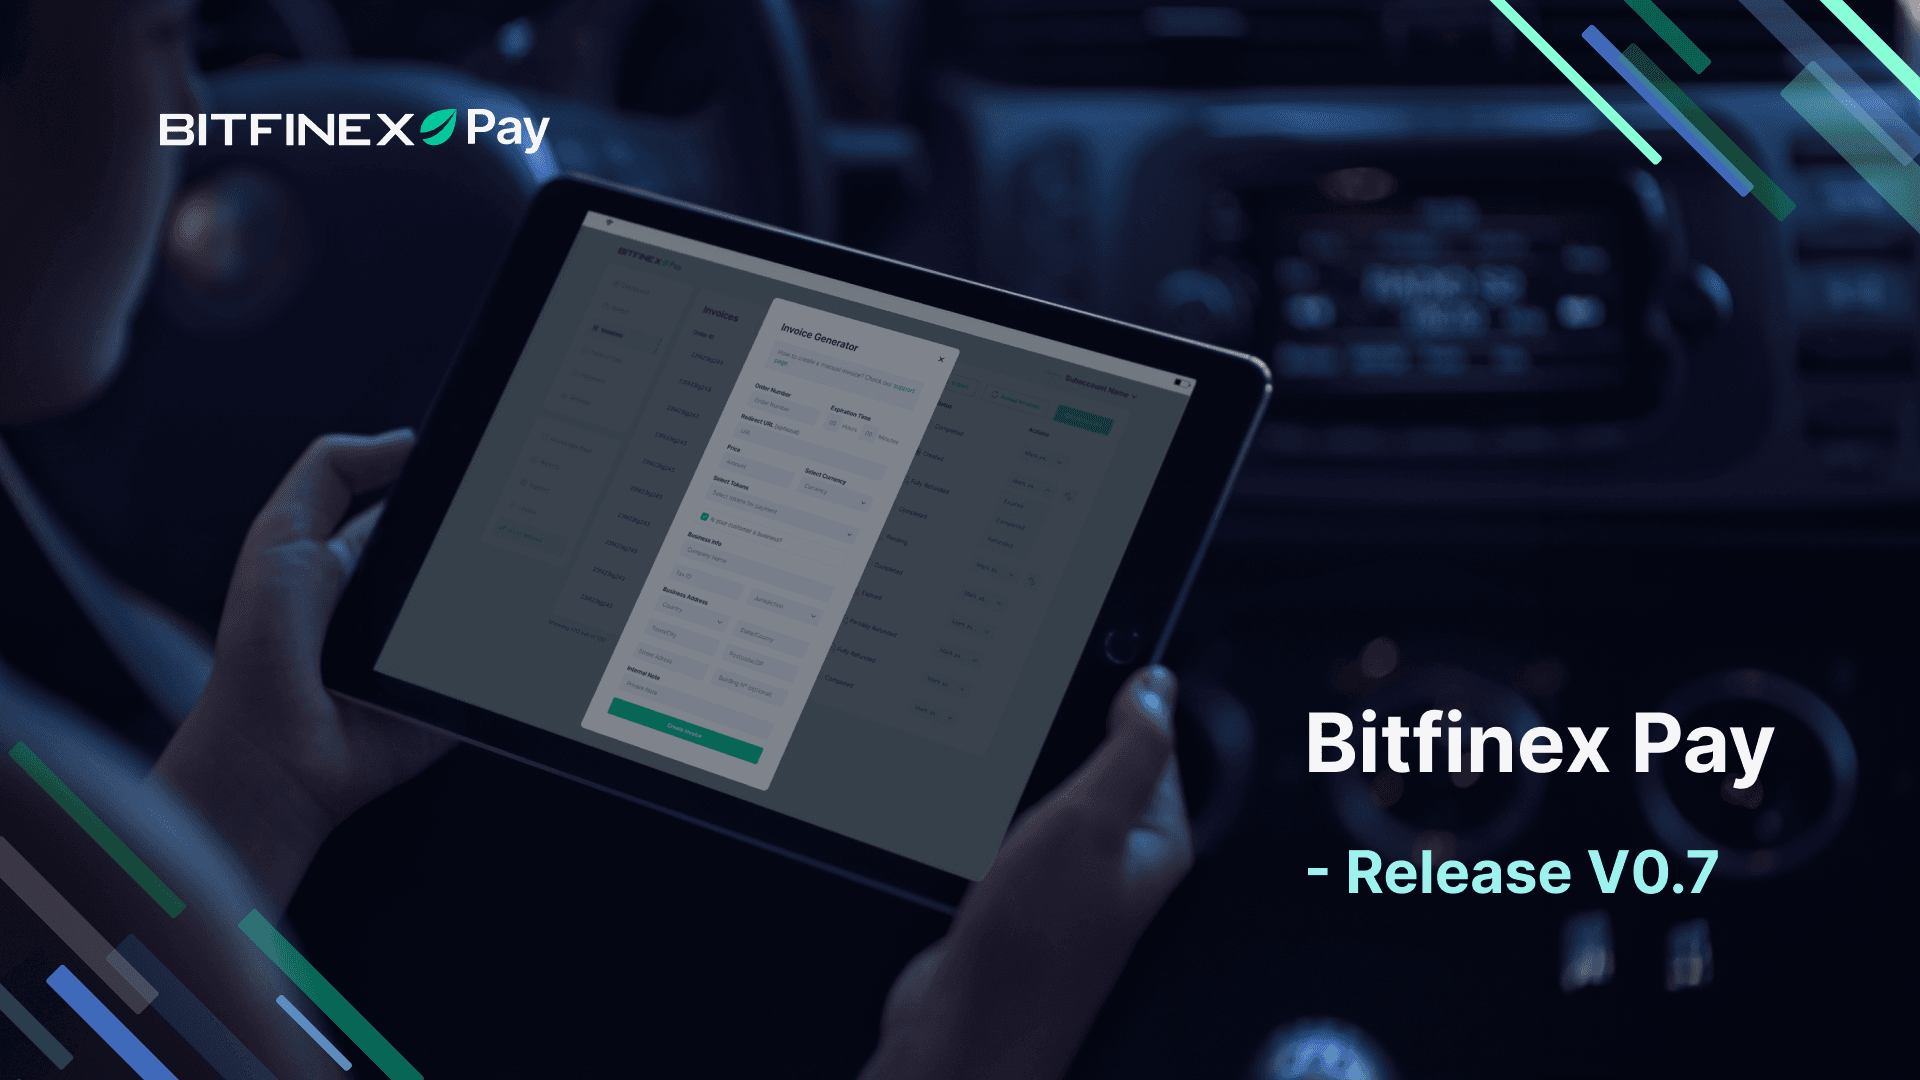 Bitfinex Pay – Release V0.7